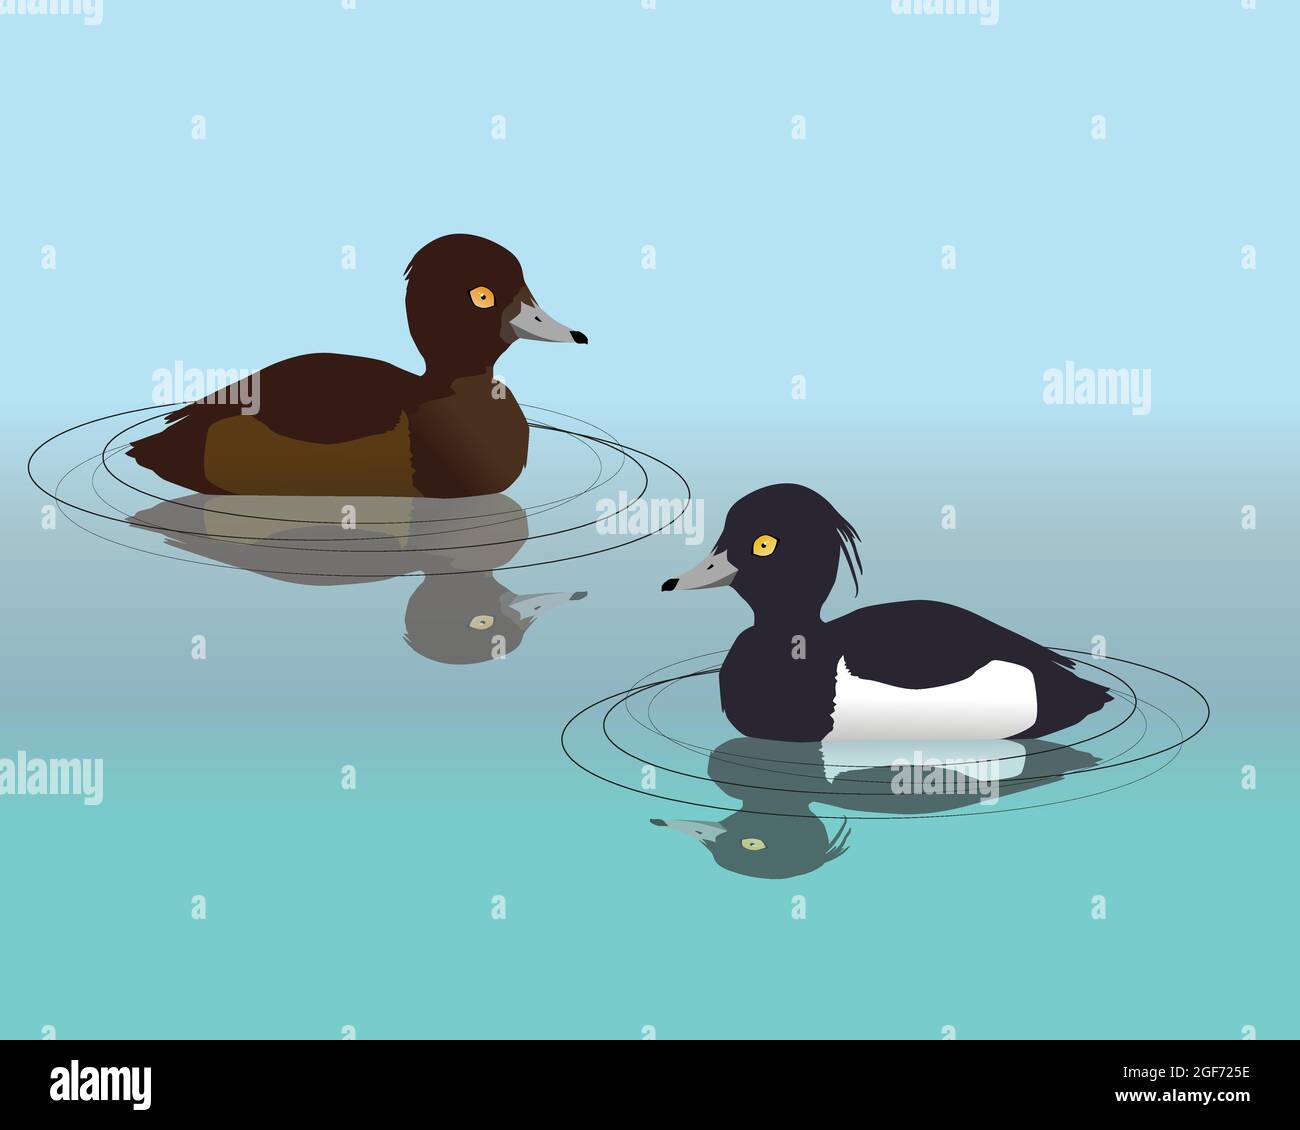 Illustration vectorielle de deux canards touffetés nageant dans l'eau. Leur réflexion est visible dans l'eau. Illustration de Vecteur